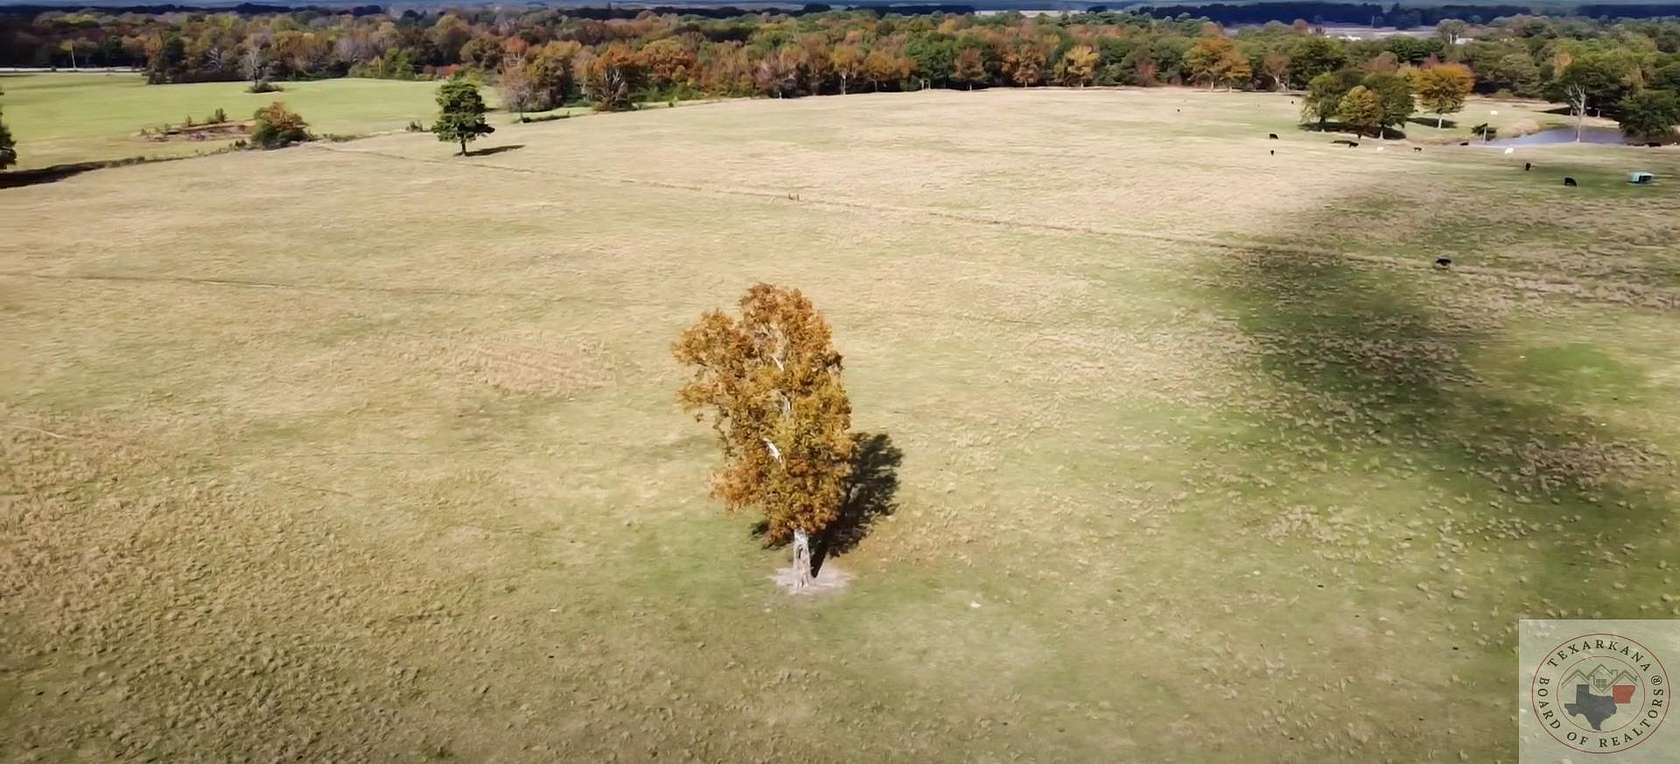 17 Acres of Land for Sale in De Kalb, Texas